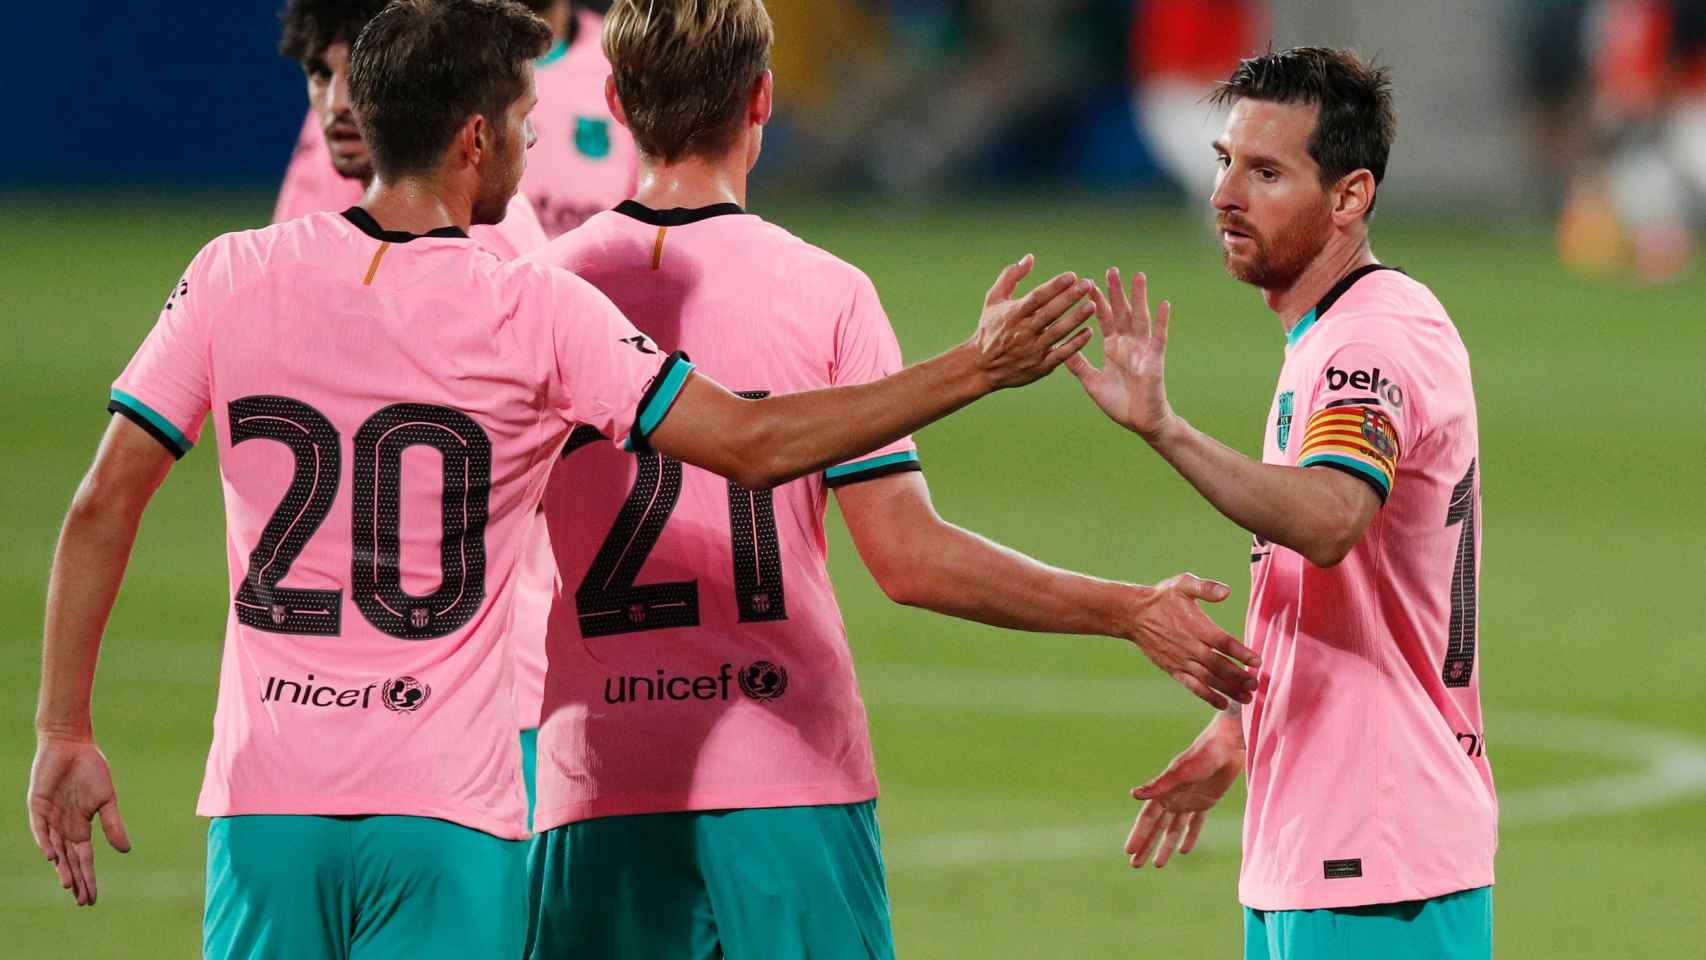 El estreno la camiseta del Barcelona: polémica en redes y el regreso Messi goleador